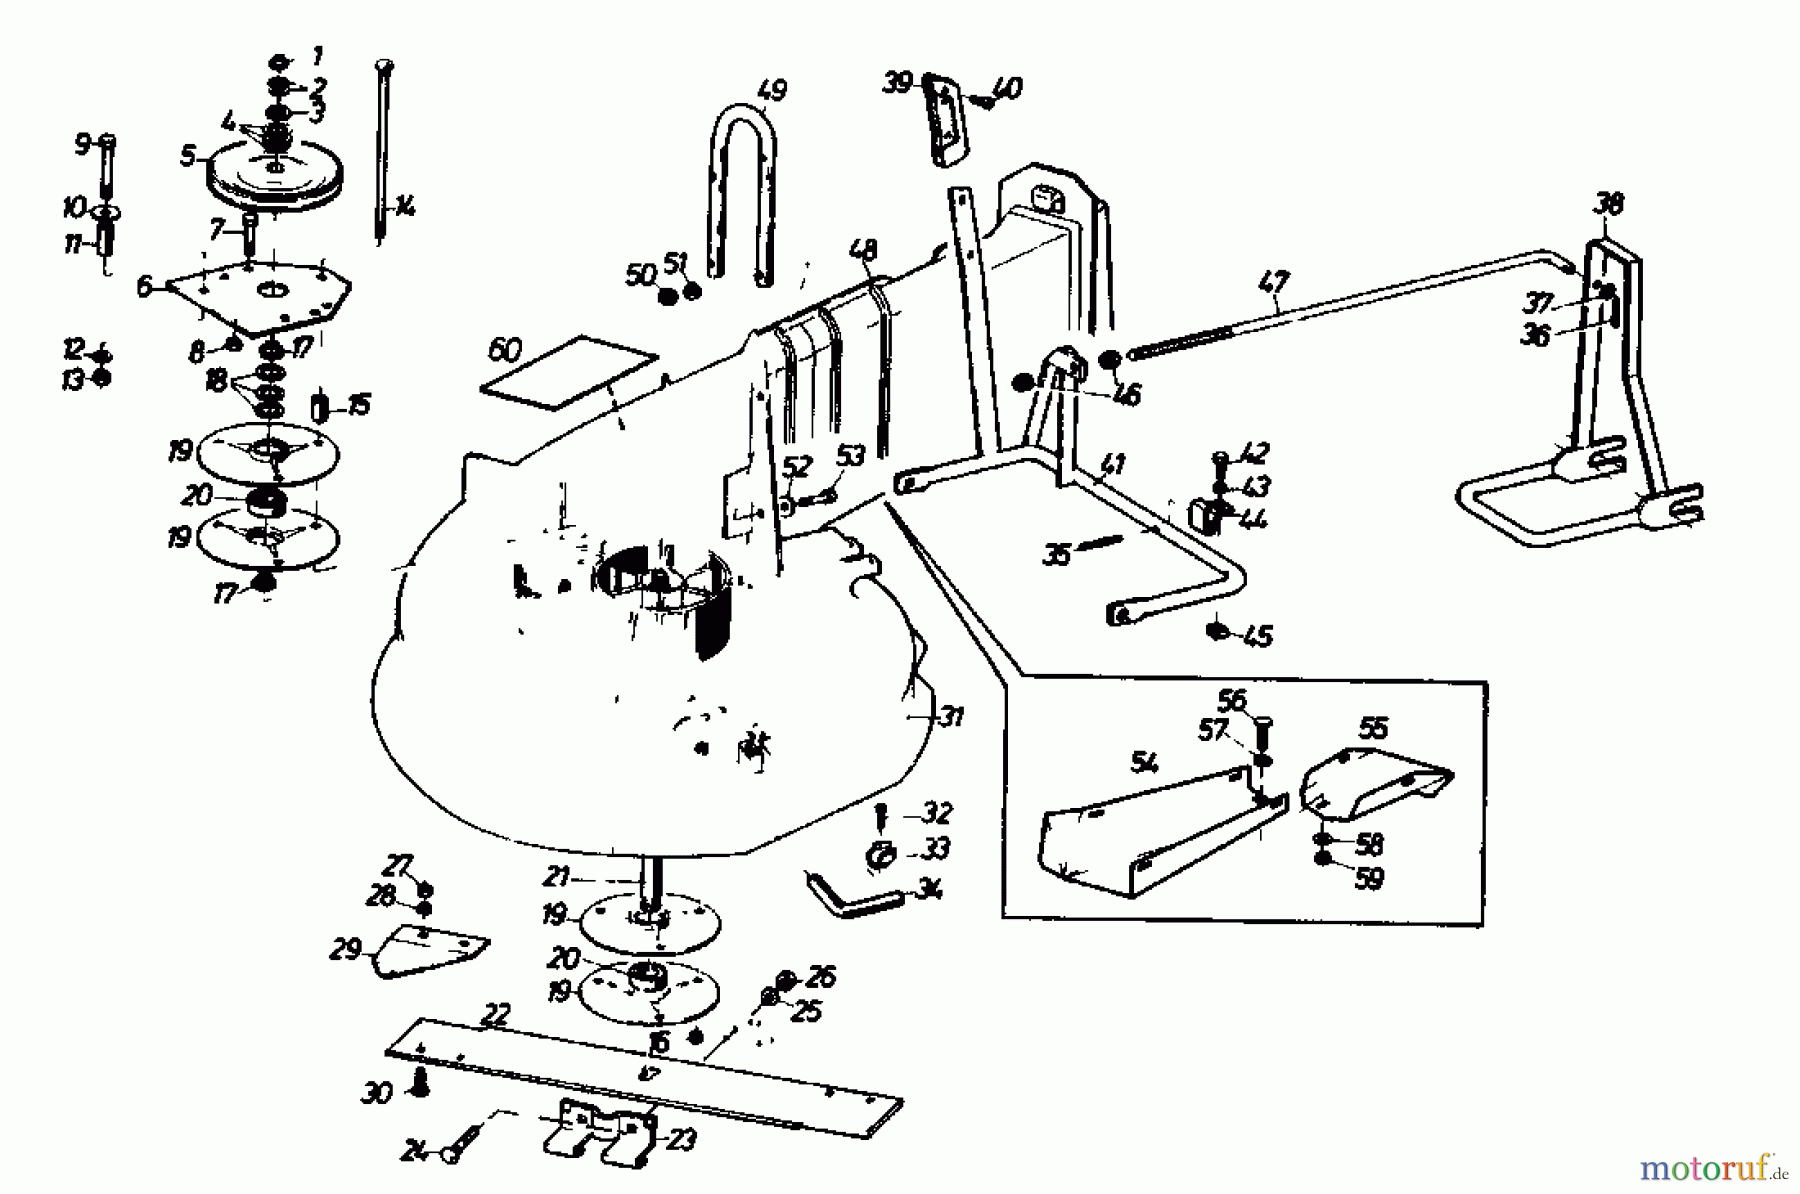  Gutbrod Rasentraktoren Sprint 1000 E 02840.04  (1989) Mähwerk 66cm